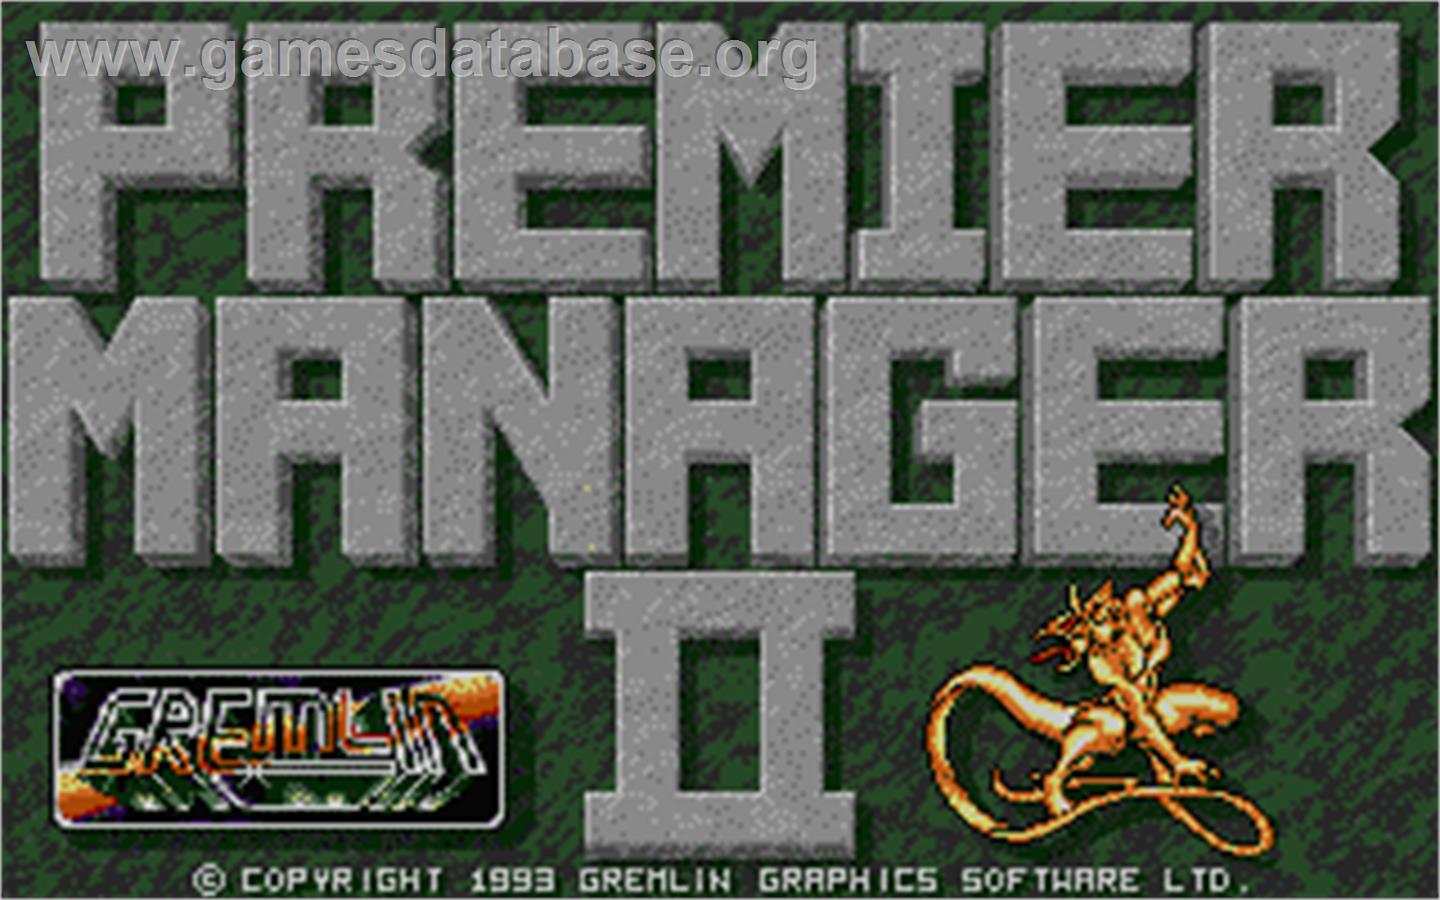 Premier Manager 2 - Atari ST - Artwork - Title Screen